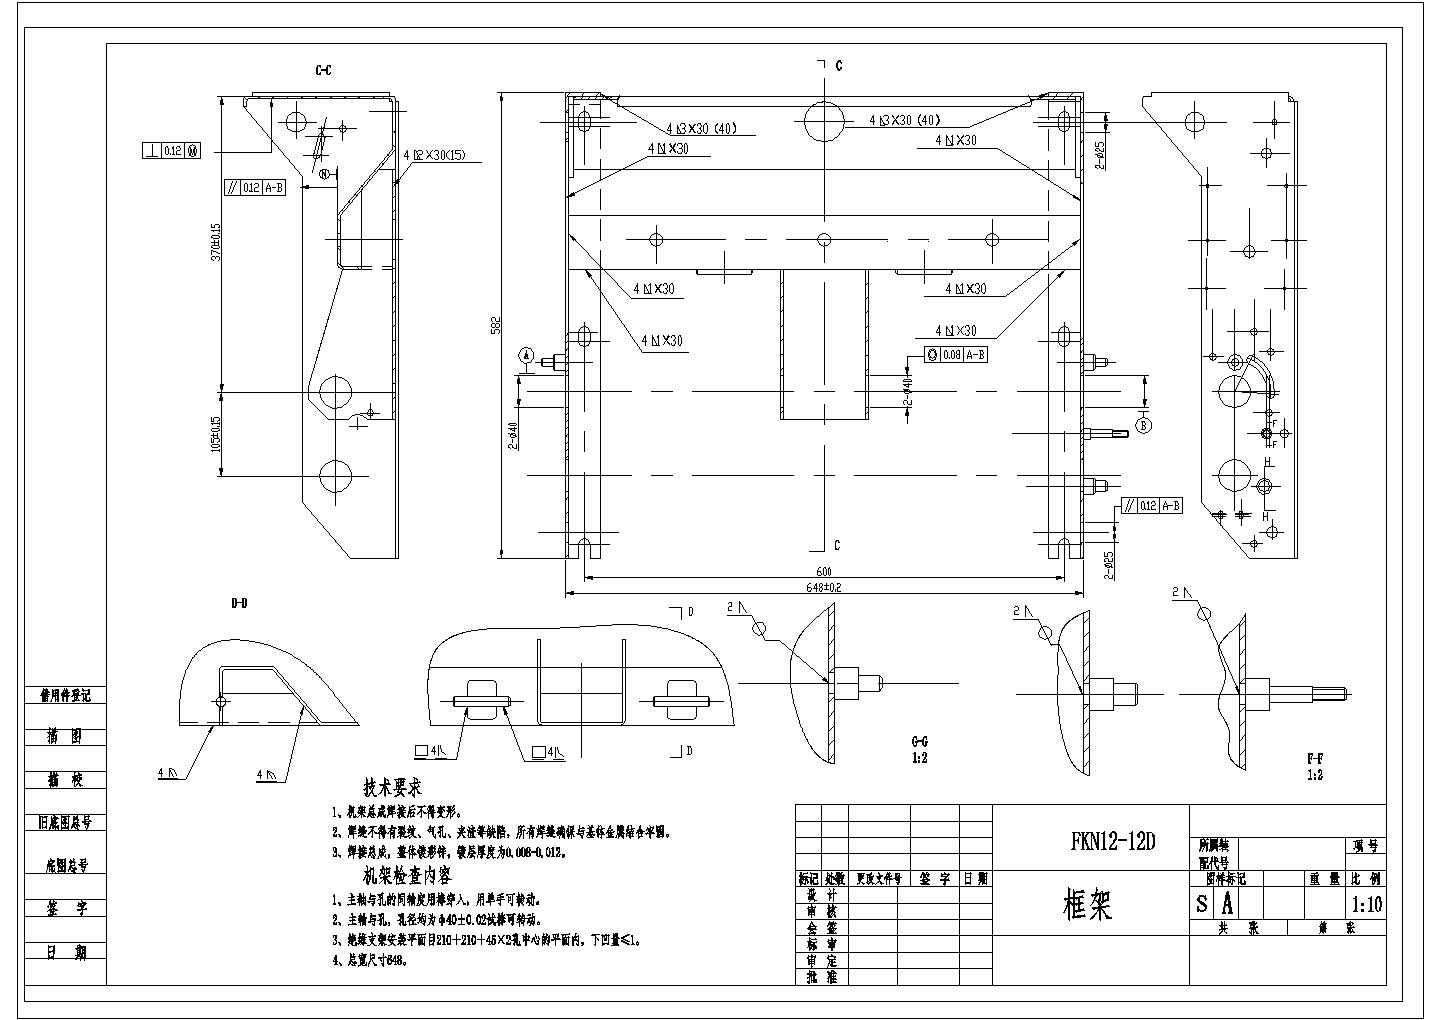 某负荷开关CAD详细设计焊接图